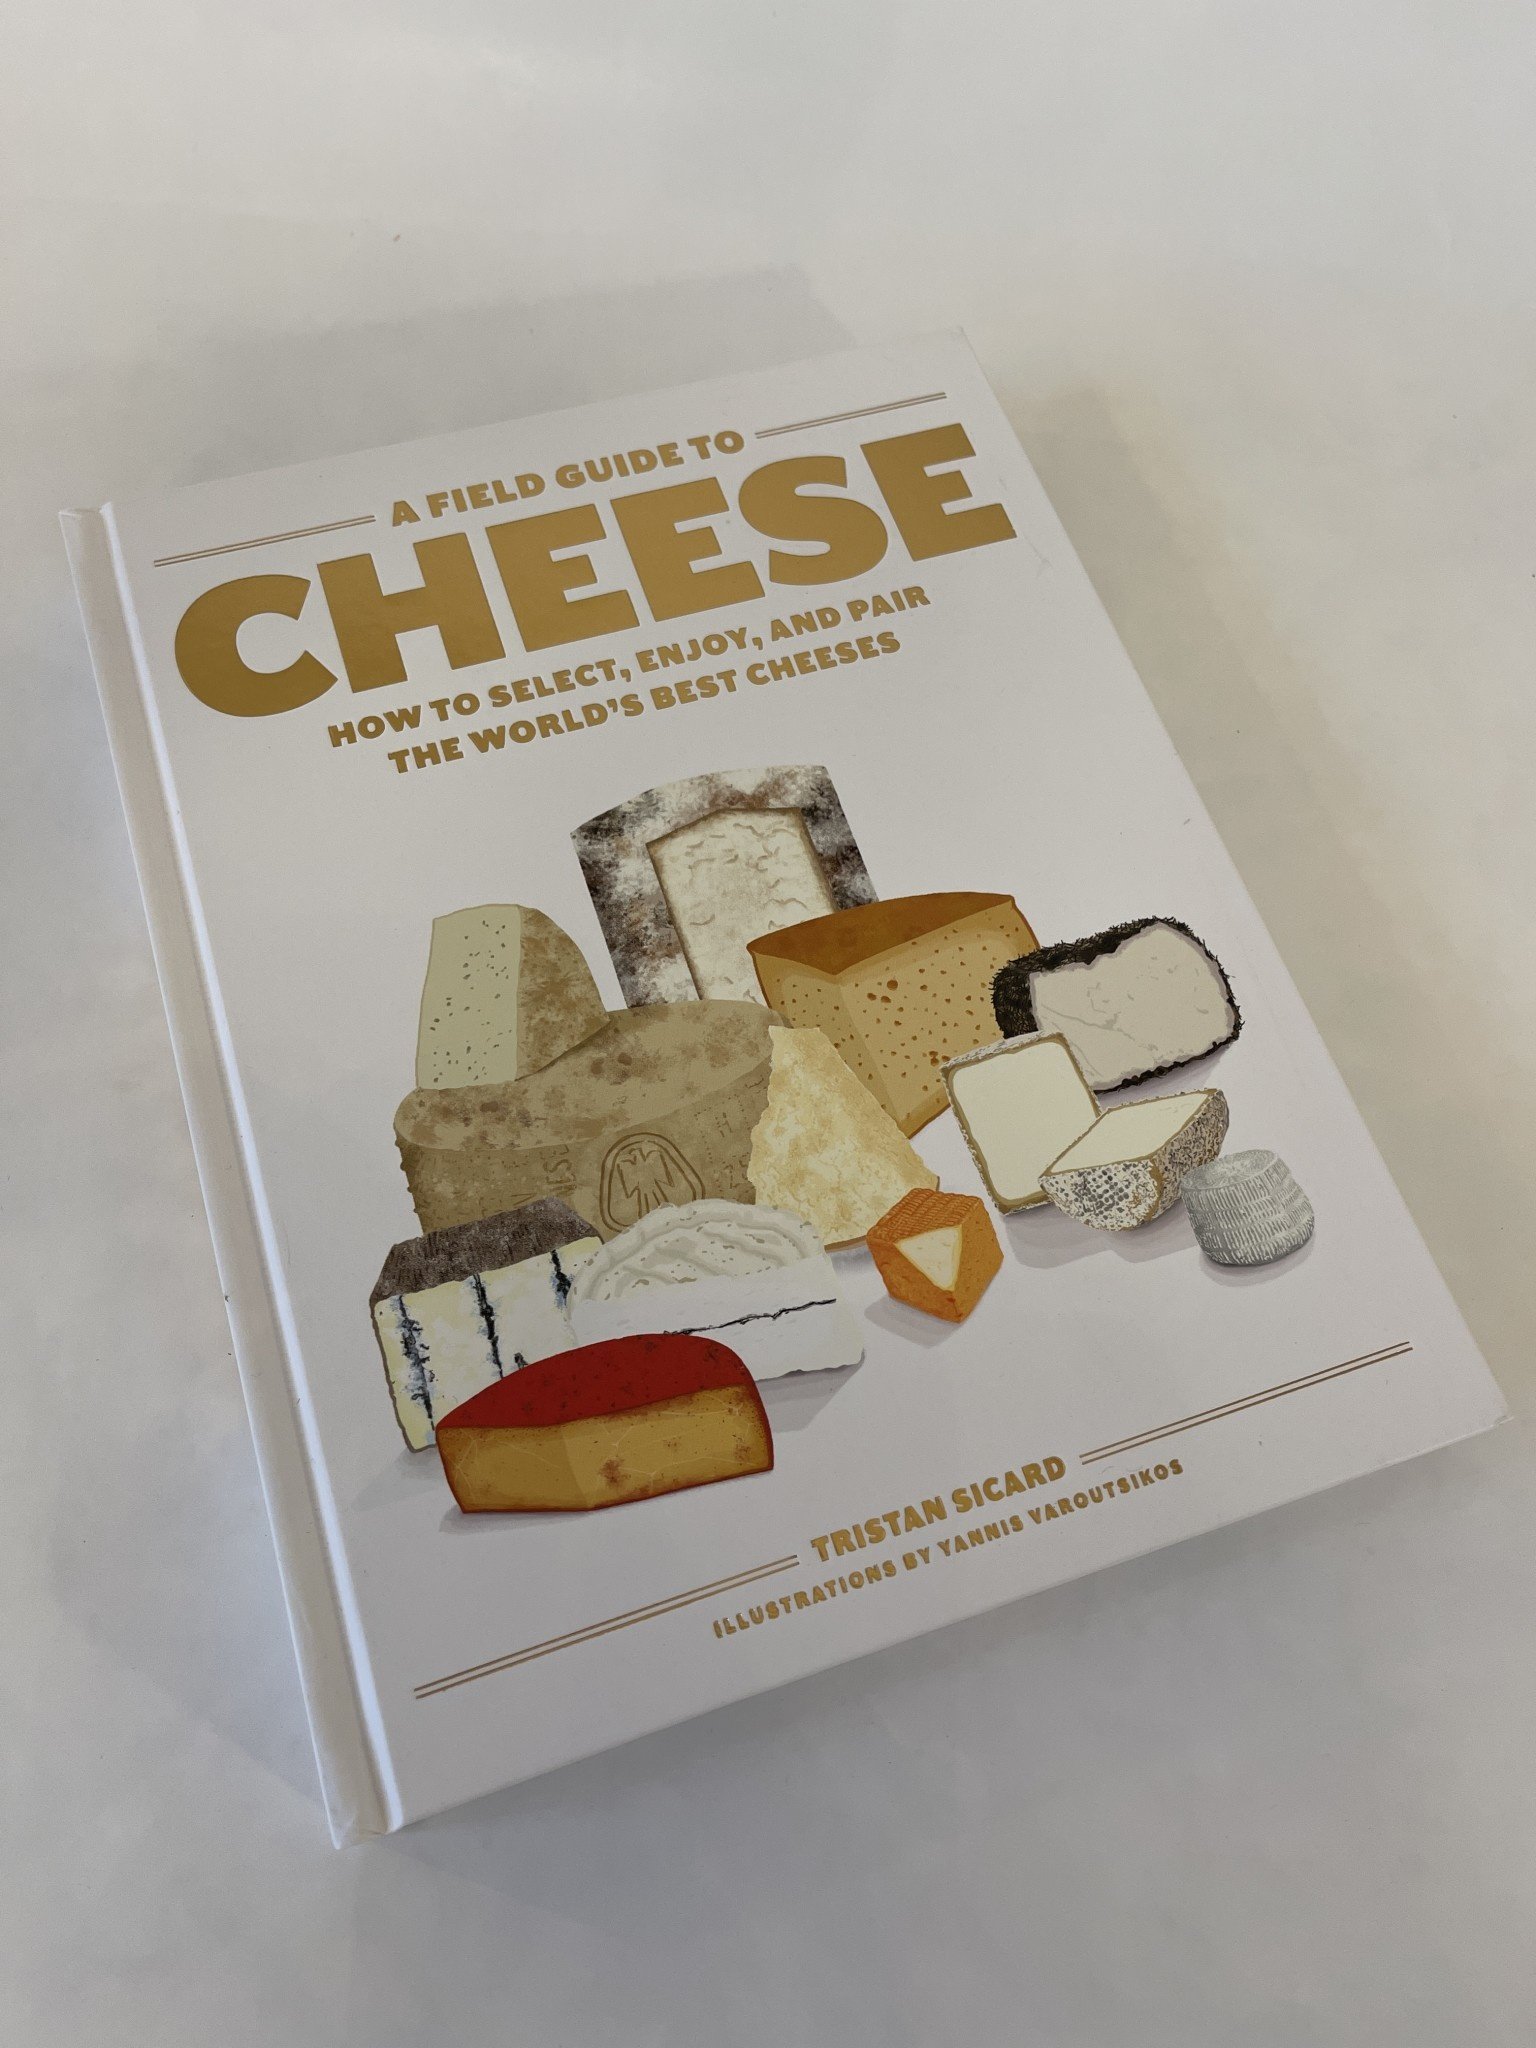 https://cdn.shoplightspeed.com/shops/645961/files/39240640/taschen-books-field-guide-to-cheese.jpg